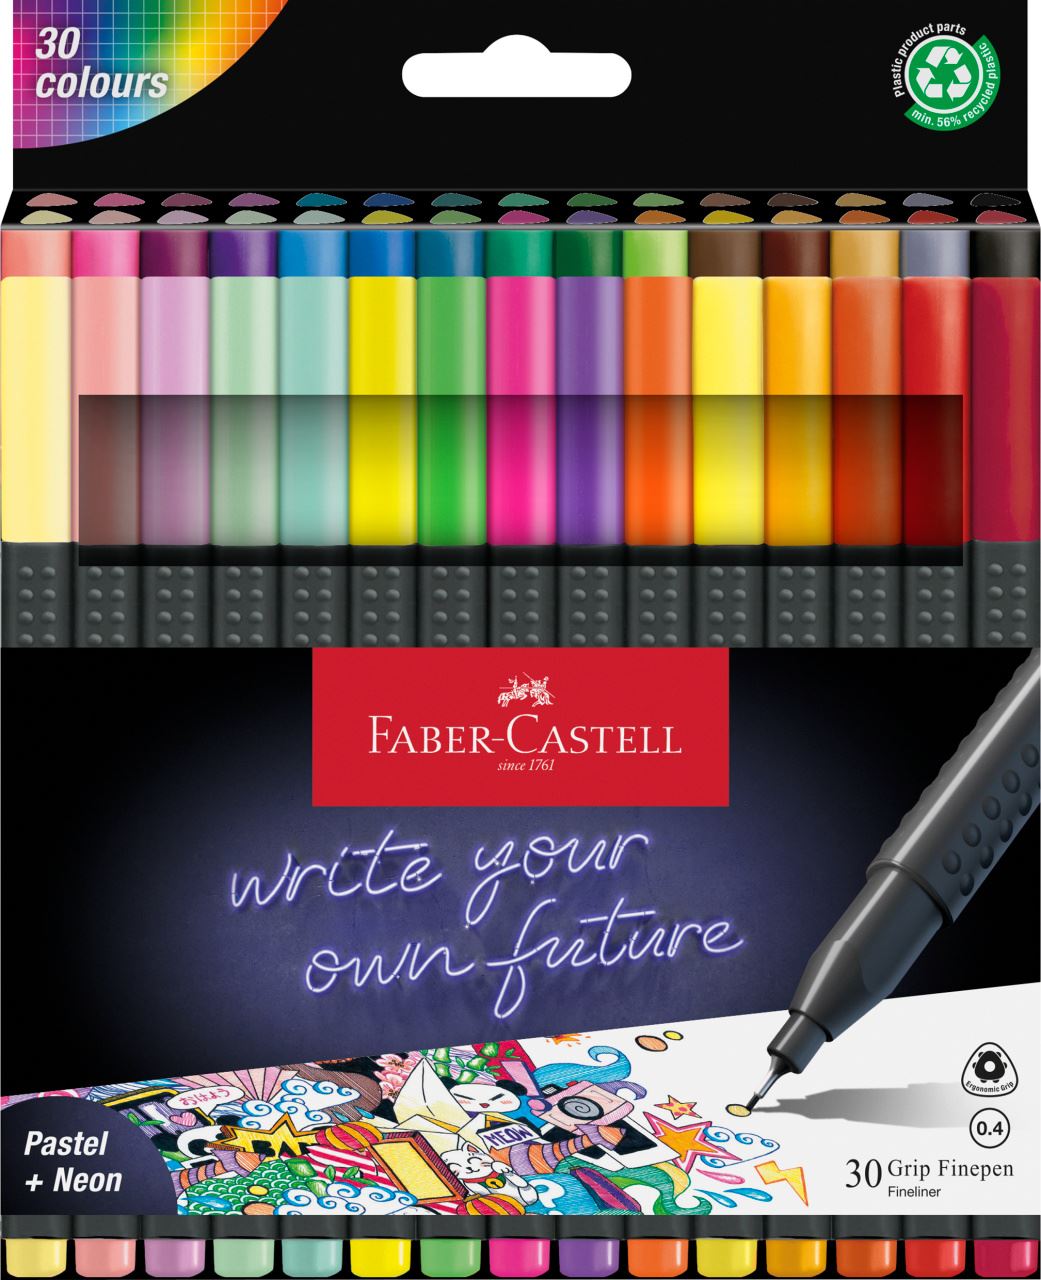 Faber-Castell - Finepen Grip étui carton x30